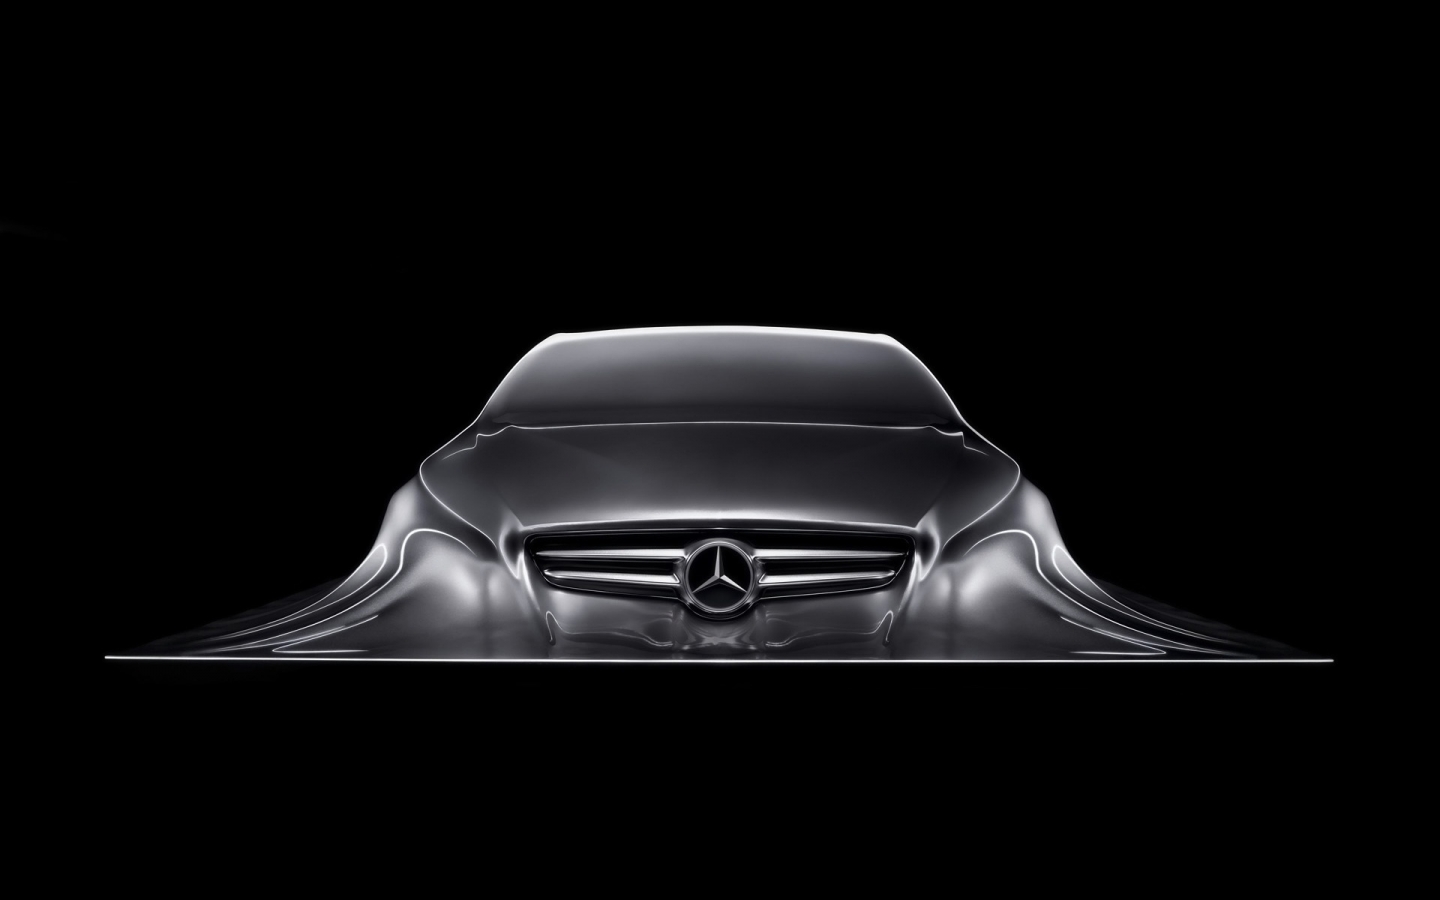 Mercedes-Benz Design Sculpture for 1440 x 900 widescreen resolution